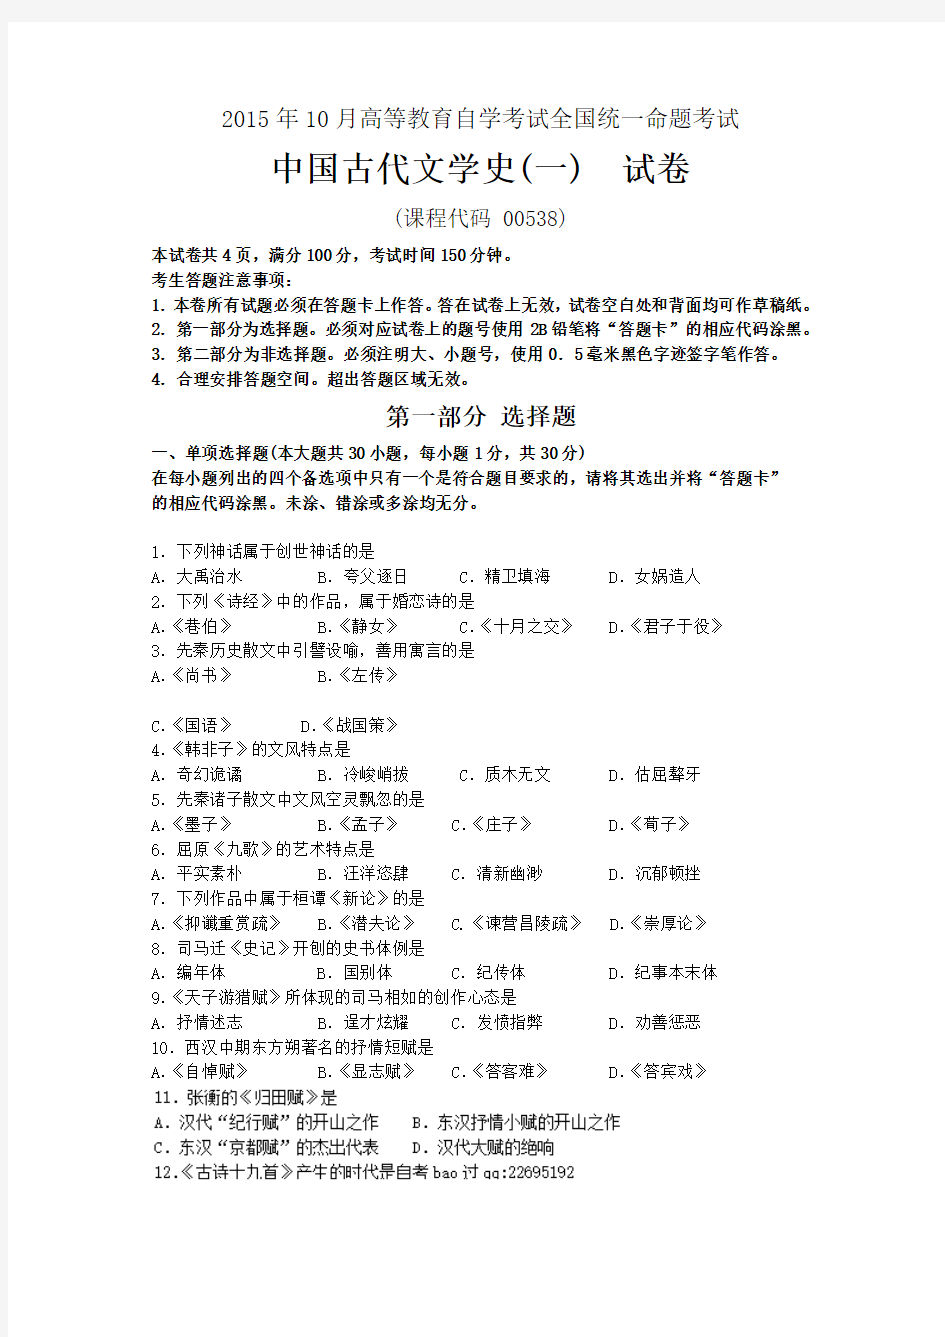 10月自考中国古代文学史(一)(00538)试题及答案解析与评分标准